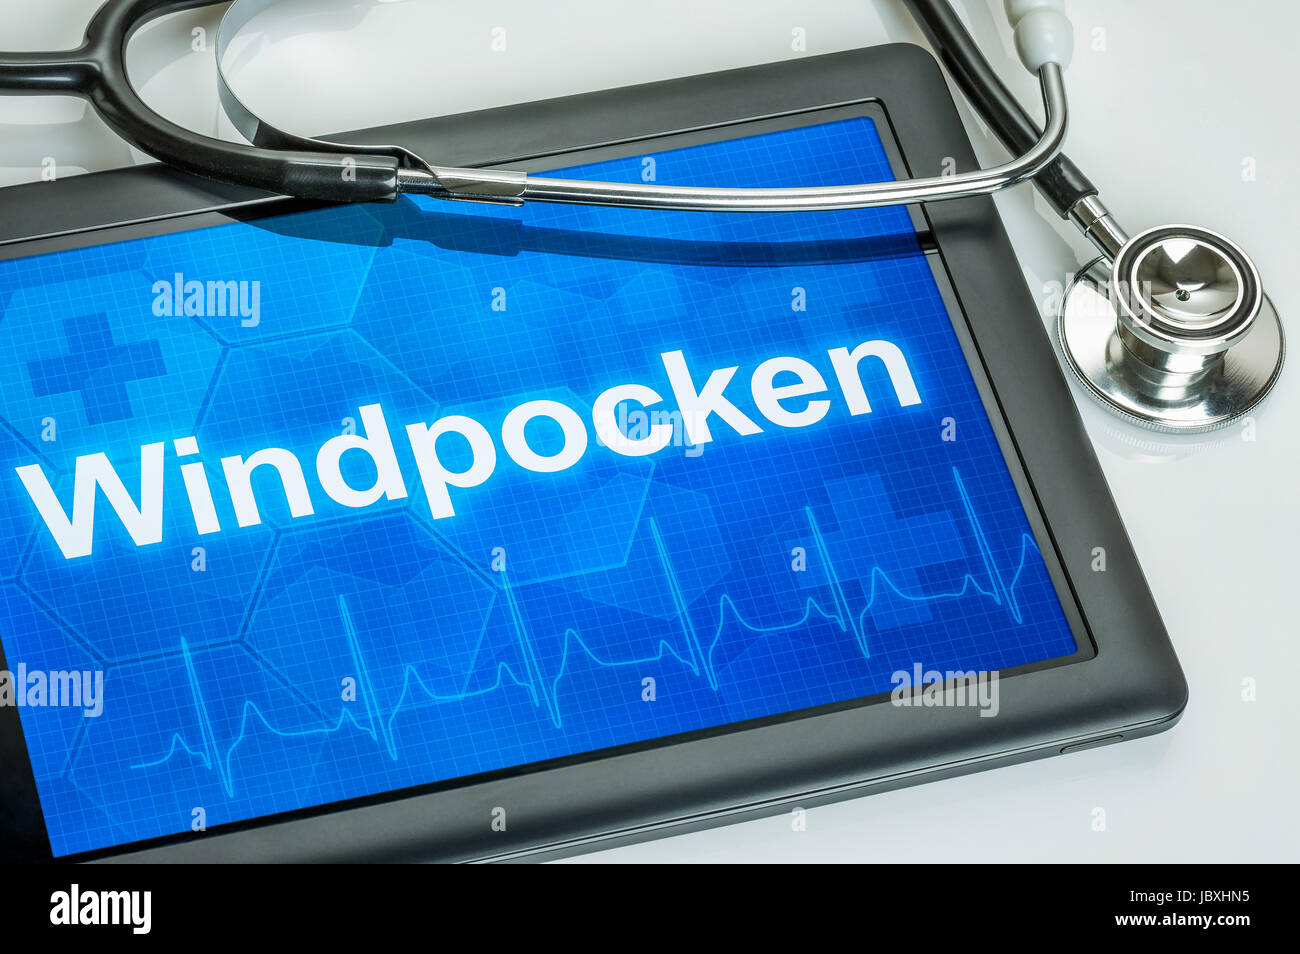 Tablet mit der Diagnose Windpocken auf dem Display Stock Photo